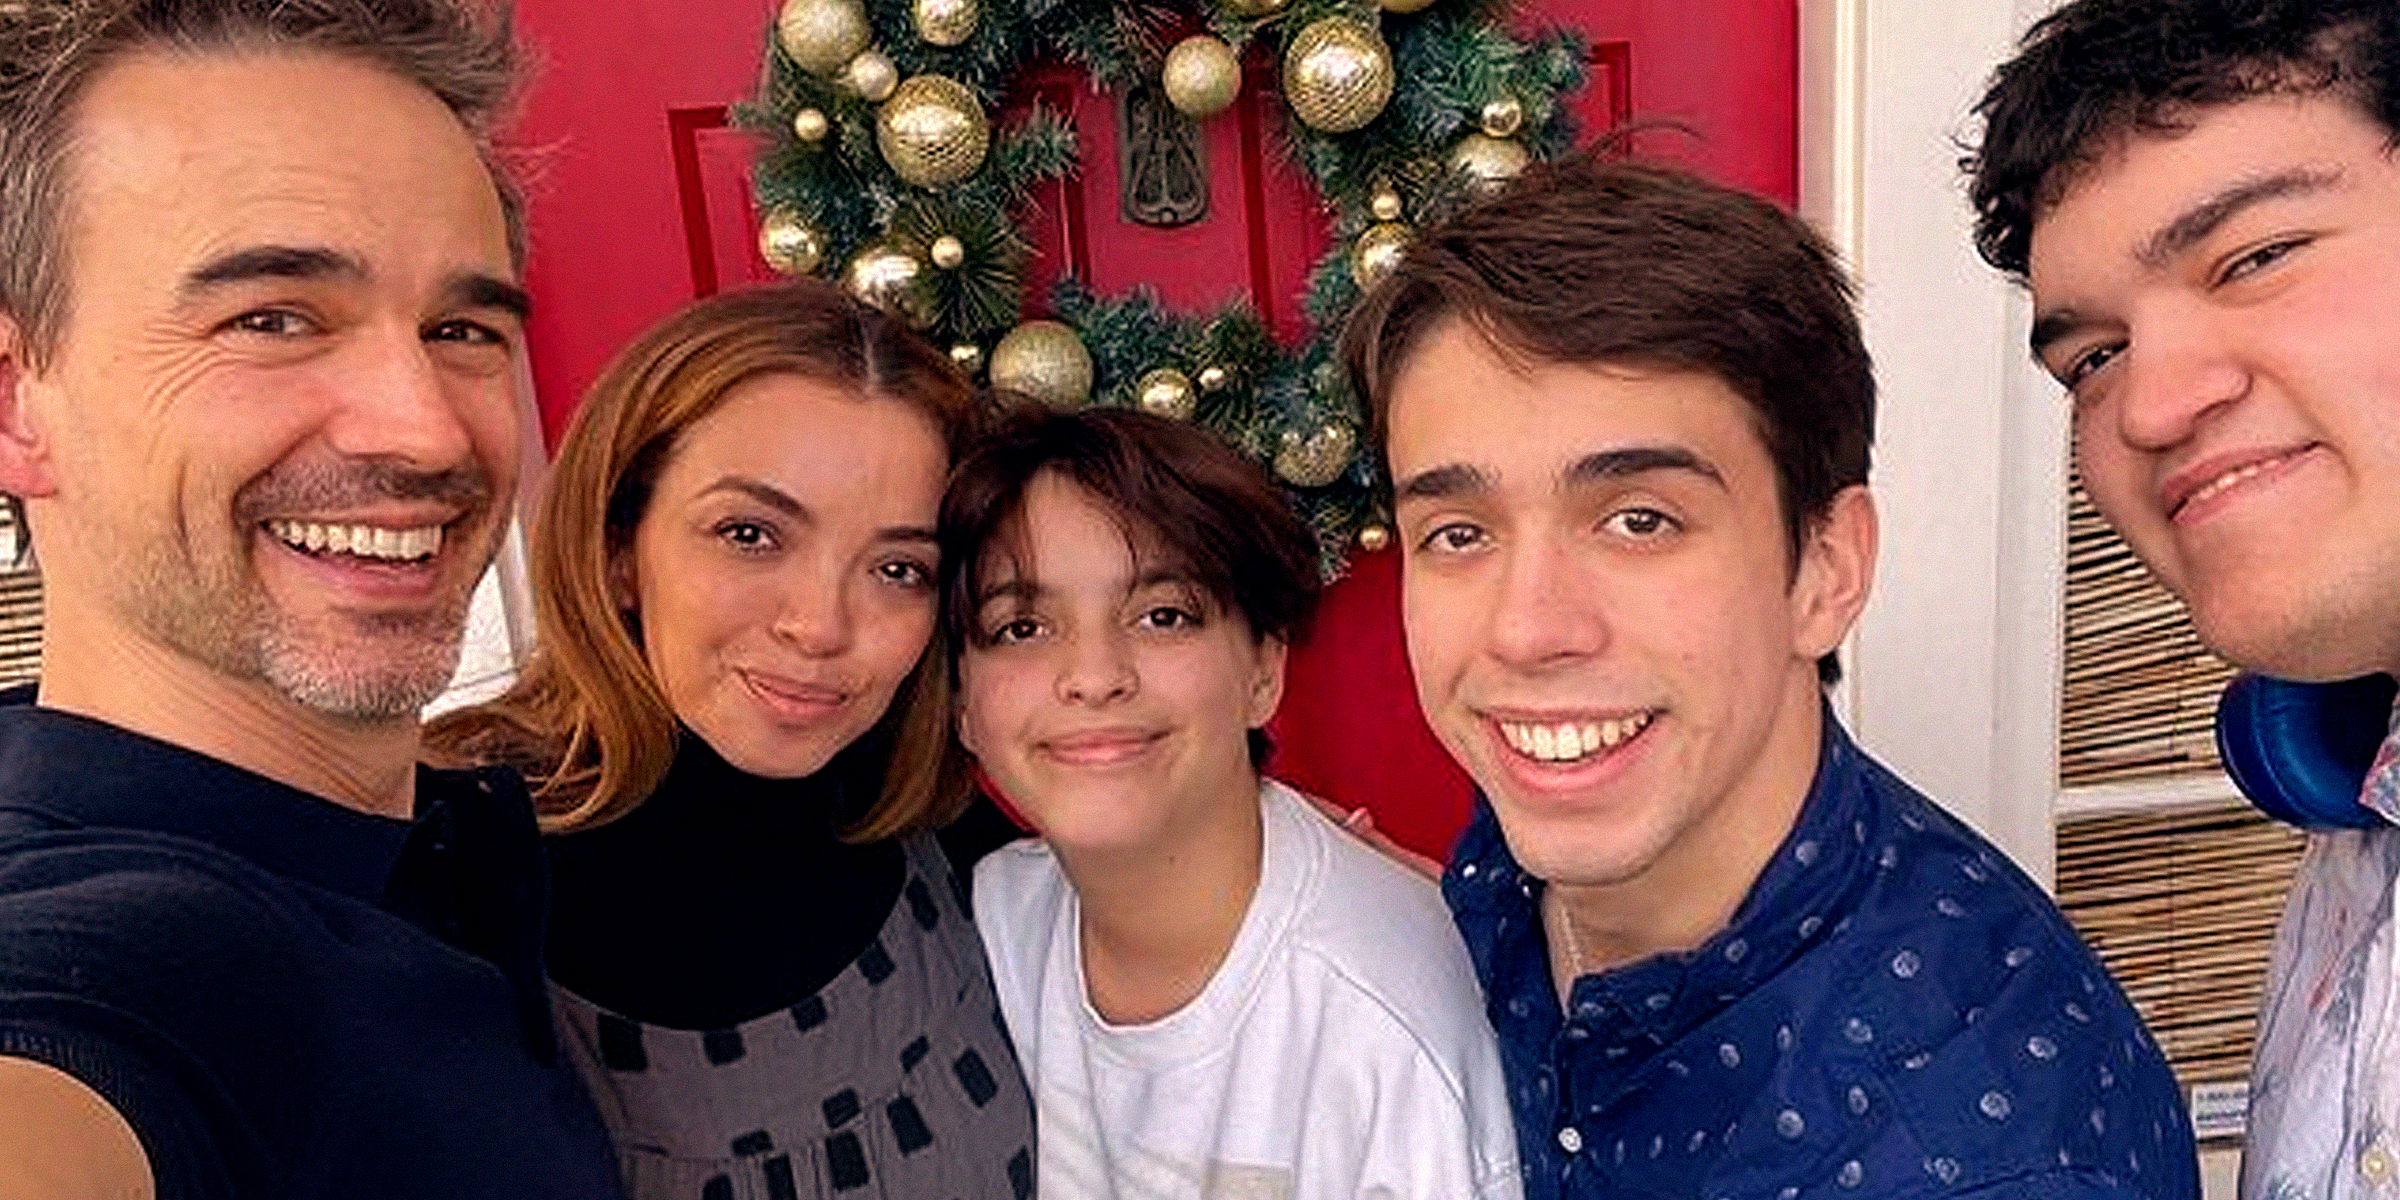 Christopher Gorham, Anel Lopez Gorham and their children | Source: Instagram.com/msanellopezgorham